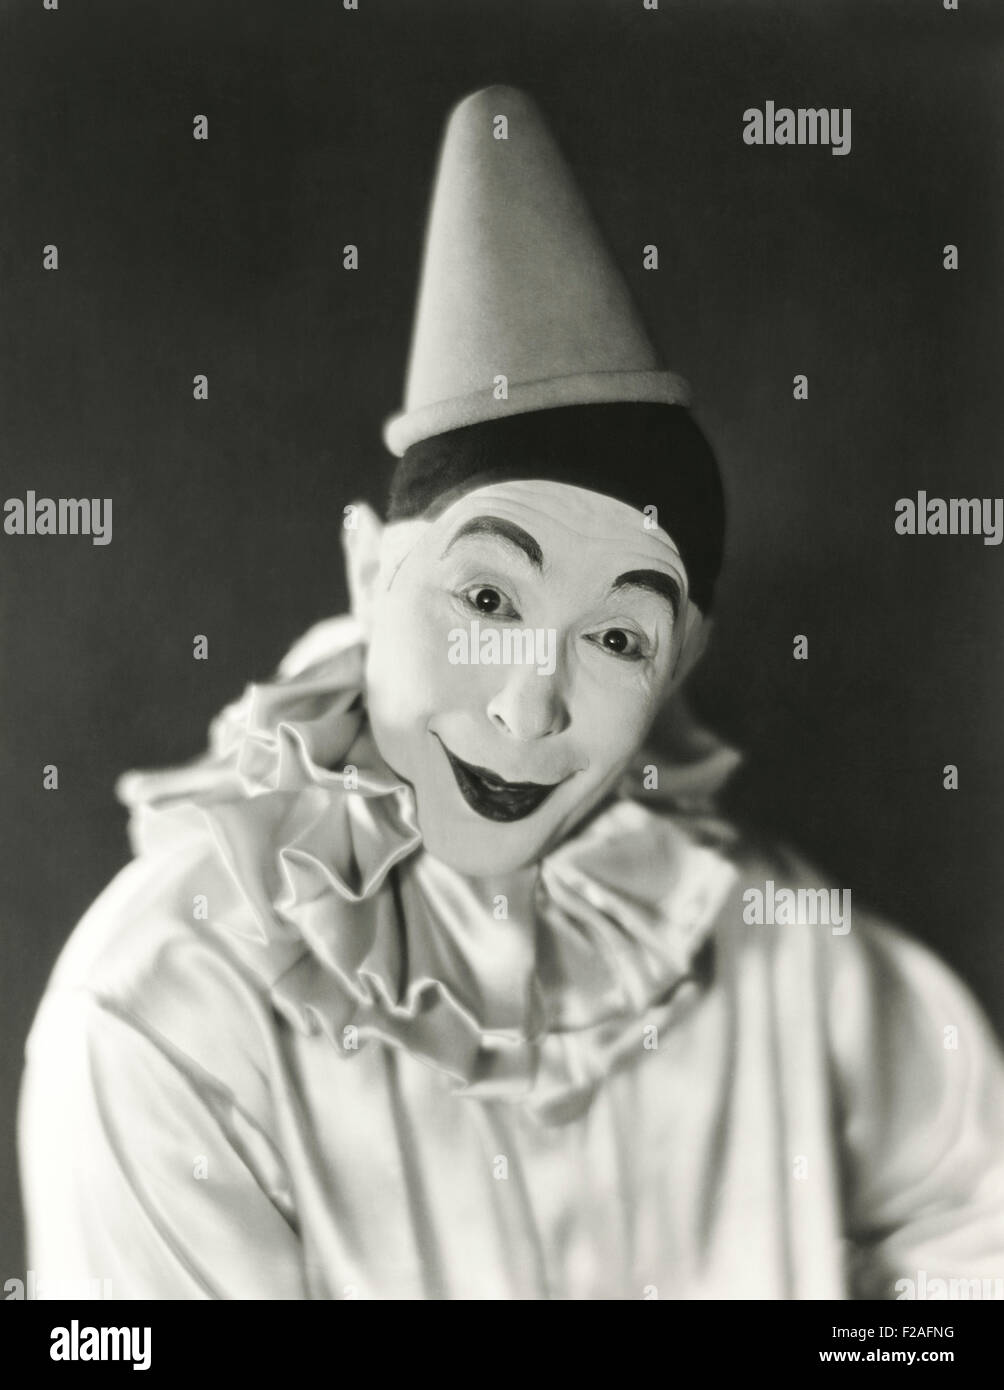 Porträt von Clown mit Dunce Cap (OLVI008 OU366 F) Stockfoto